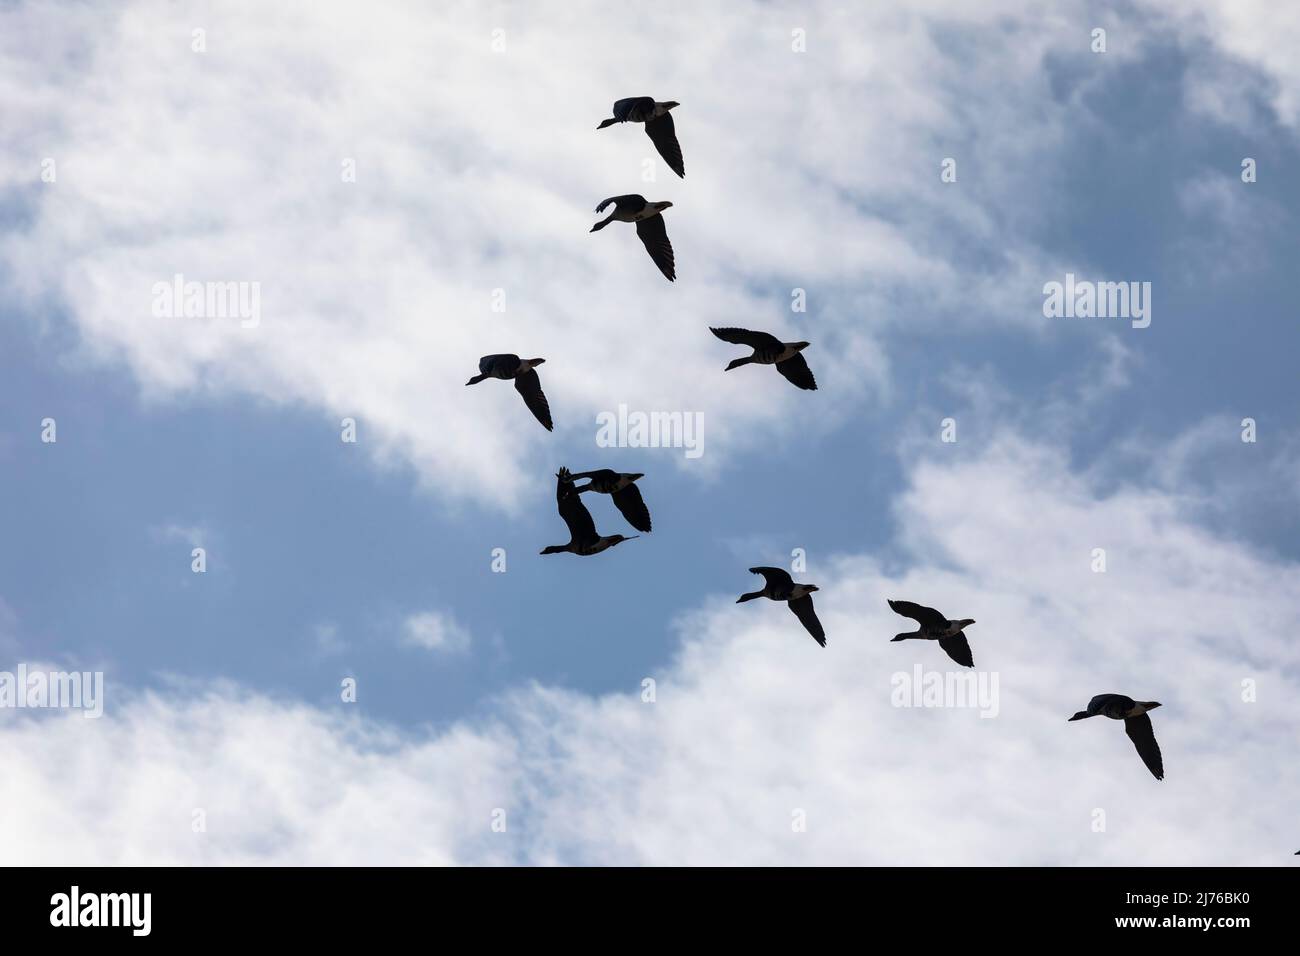 Europe, Poland, Podlaskie Voivodeship, gray geese in flight Stock Photo